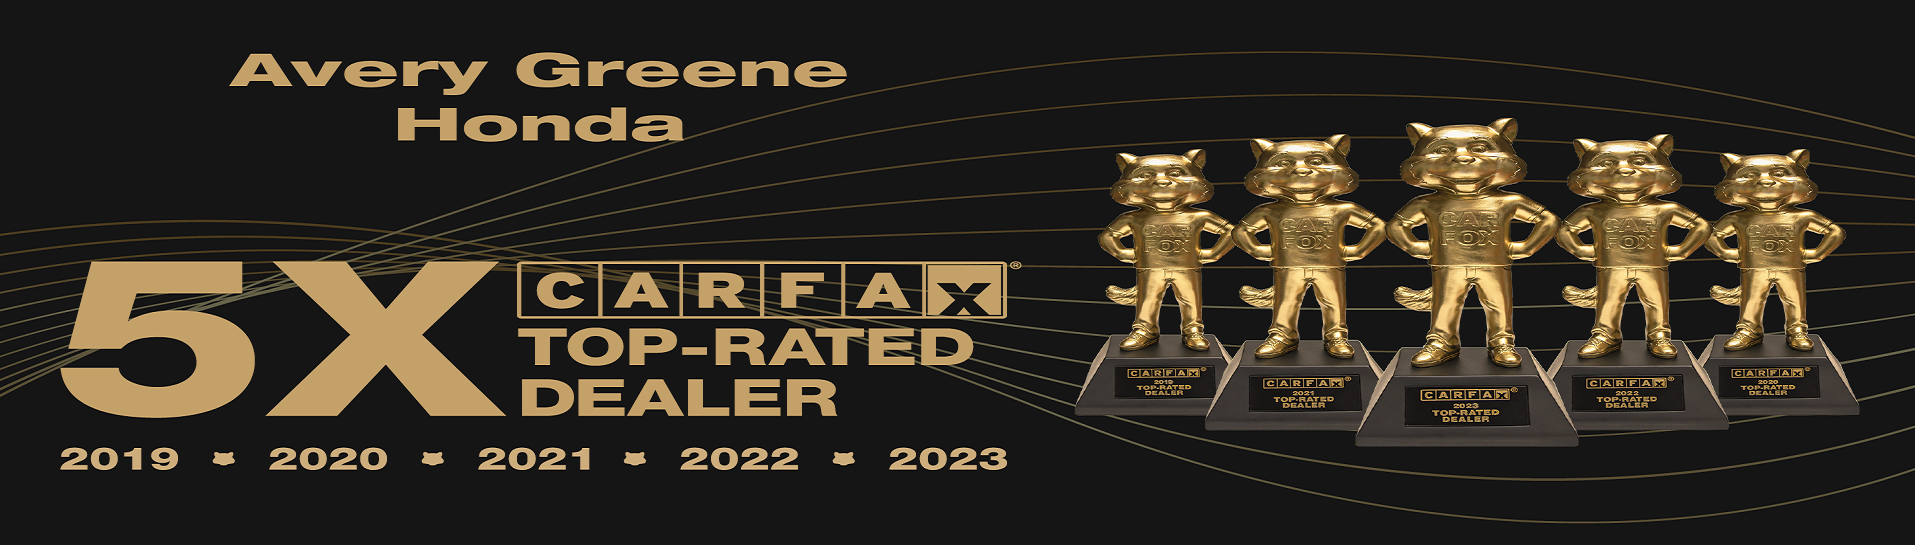 5x Carfax Dealer